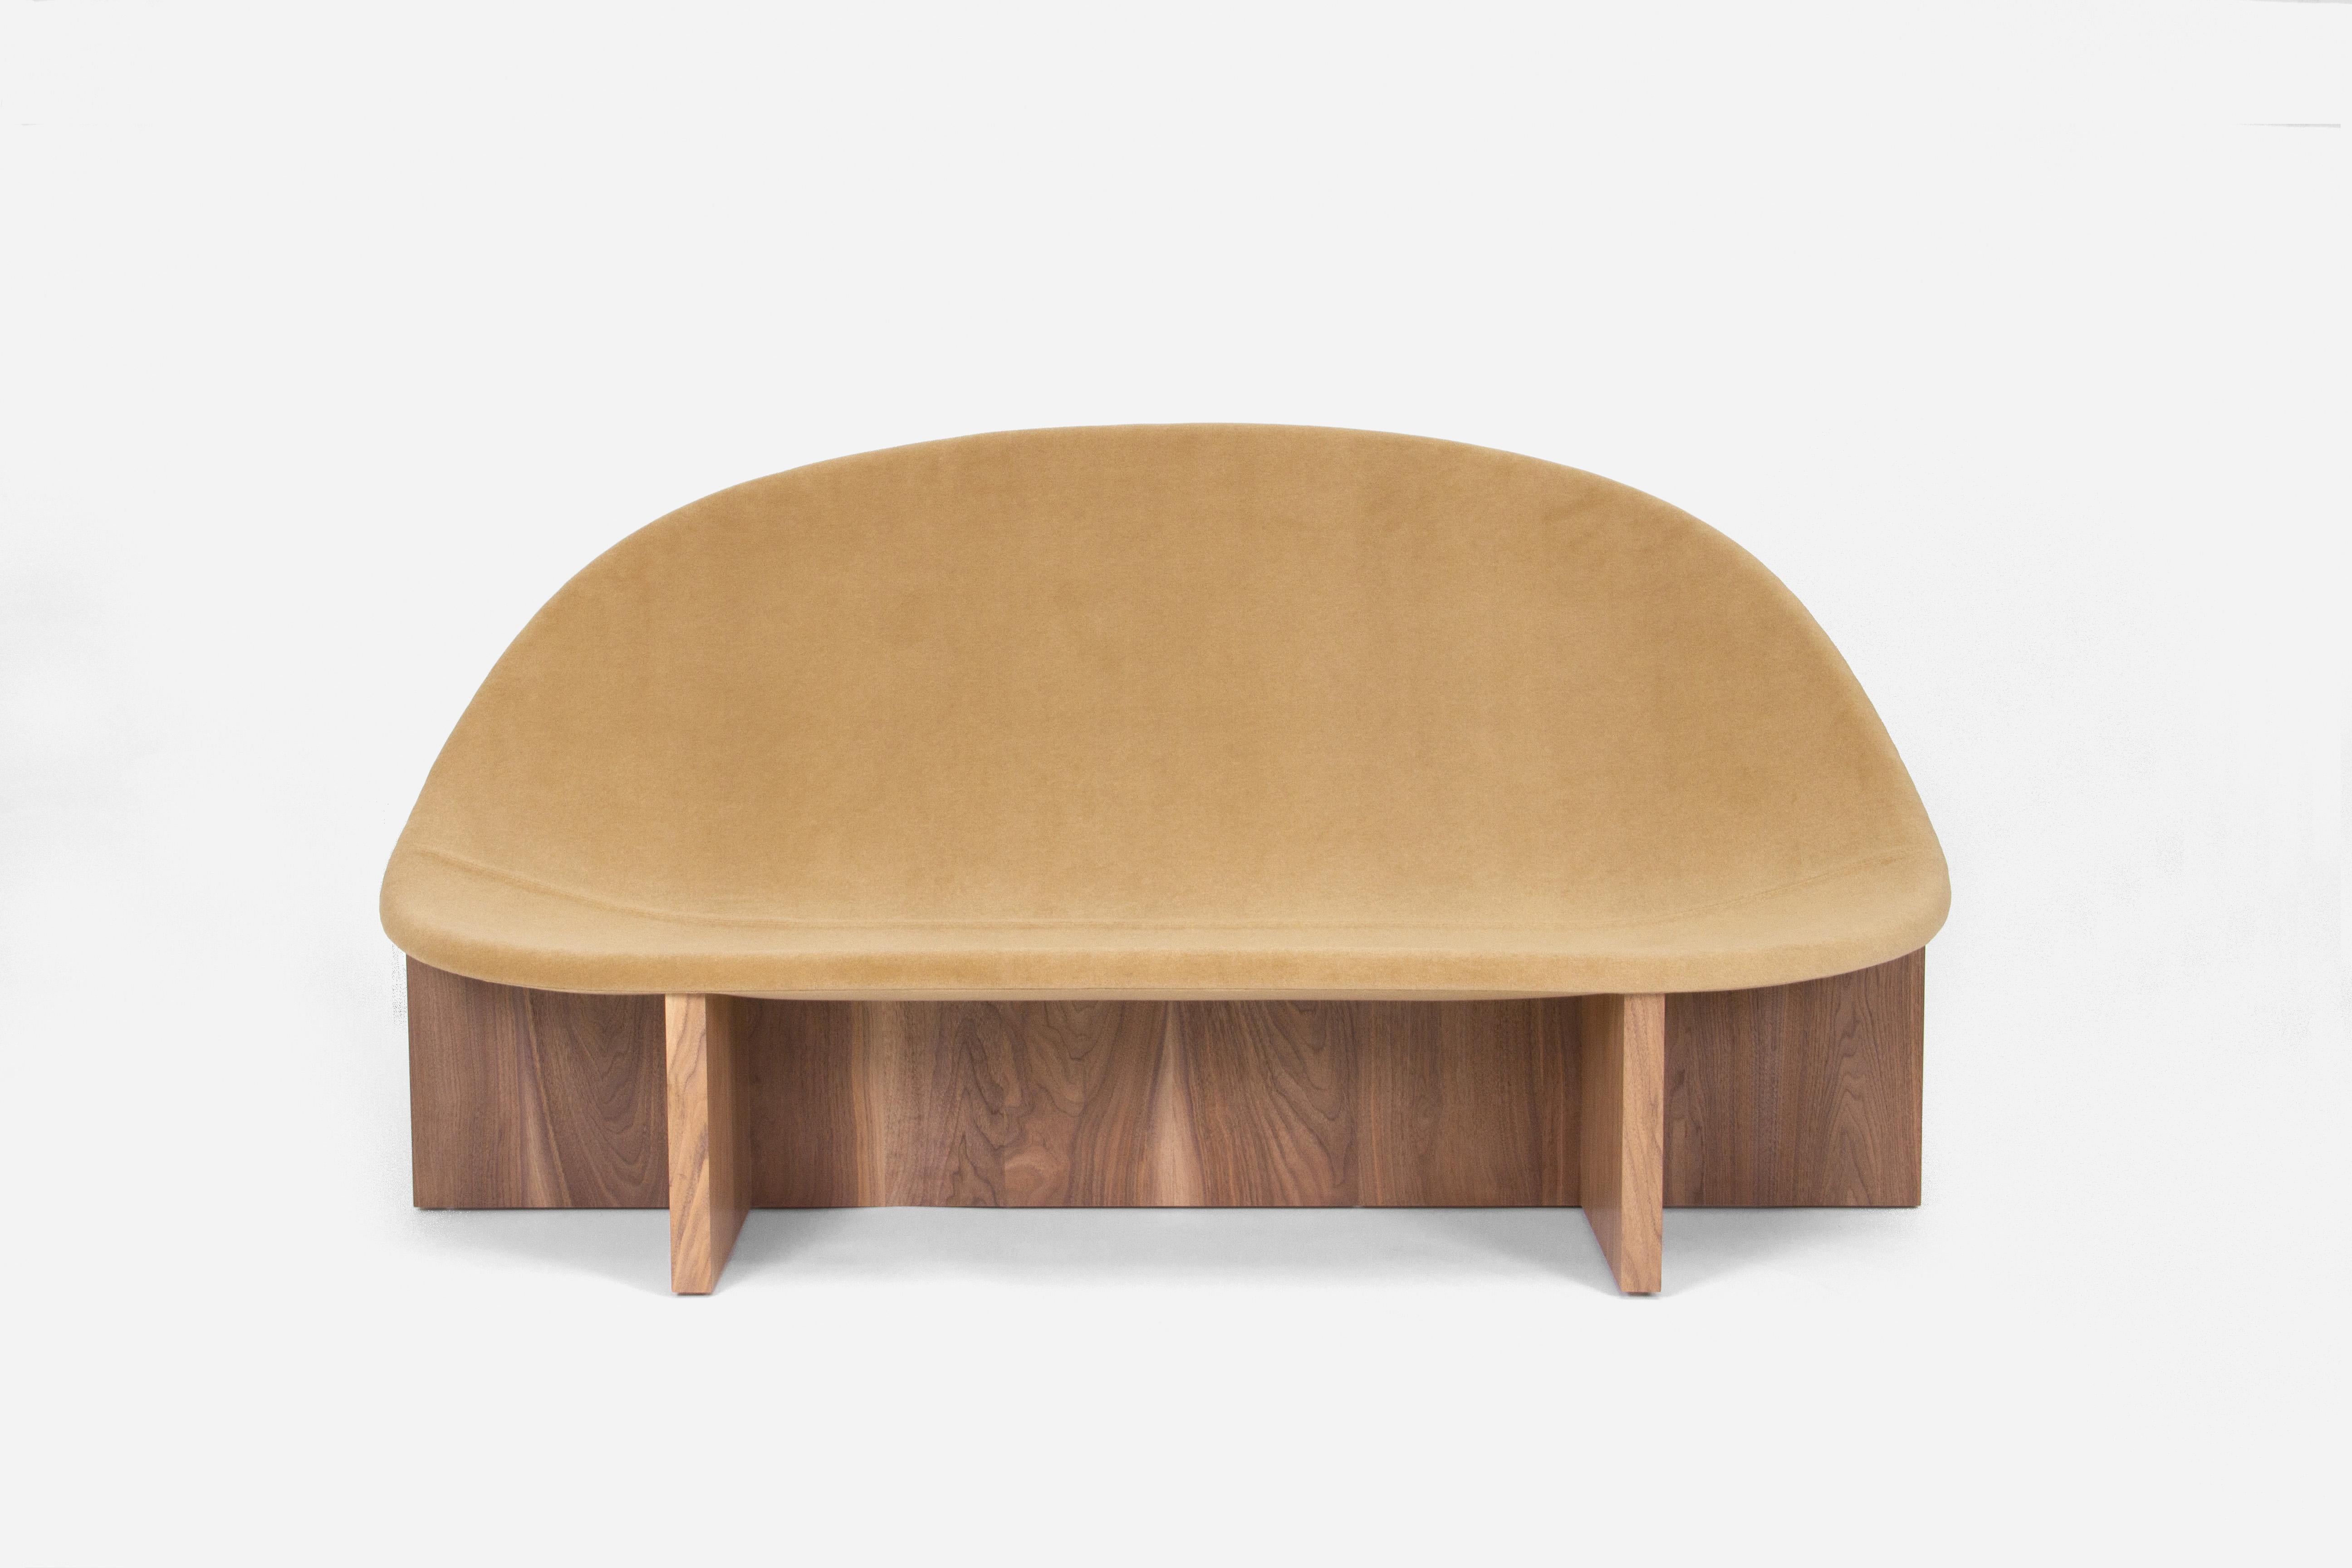 Die Sofa-Version unseres Bestsellers NIDO Lounge Chair. Die eiförmige Form des gepolsterten Holzsitzes, der sich in den kreuzförmigen Massivholzrahmen schmiegt, gibt ihm den Namen NIDO, was auf Spanisch 